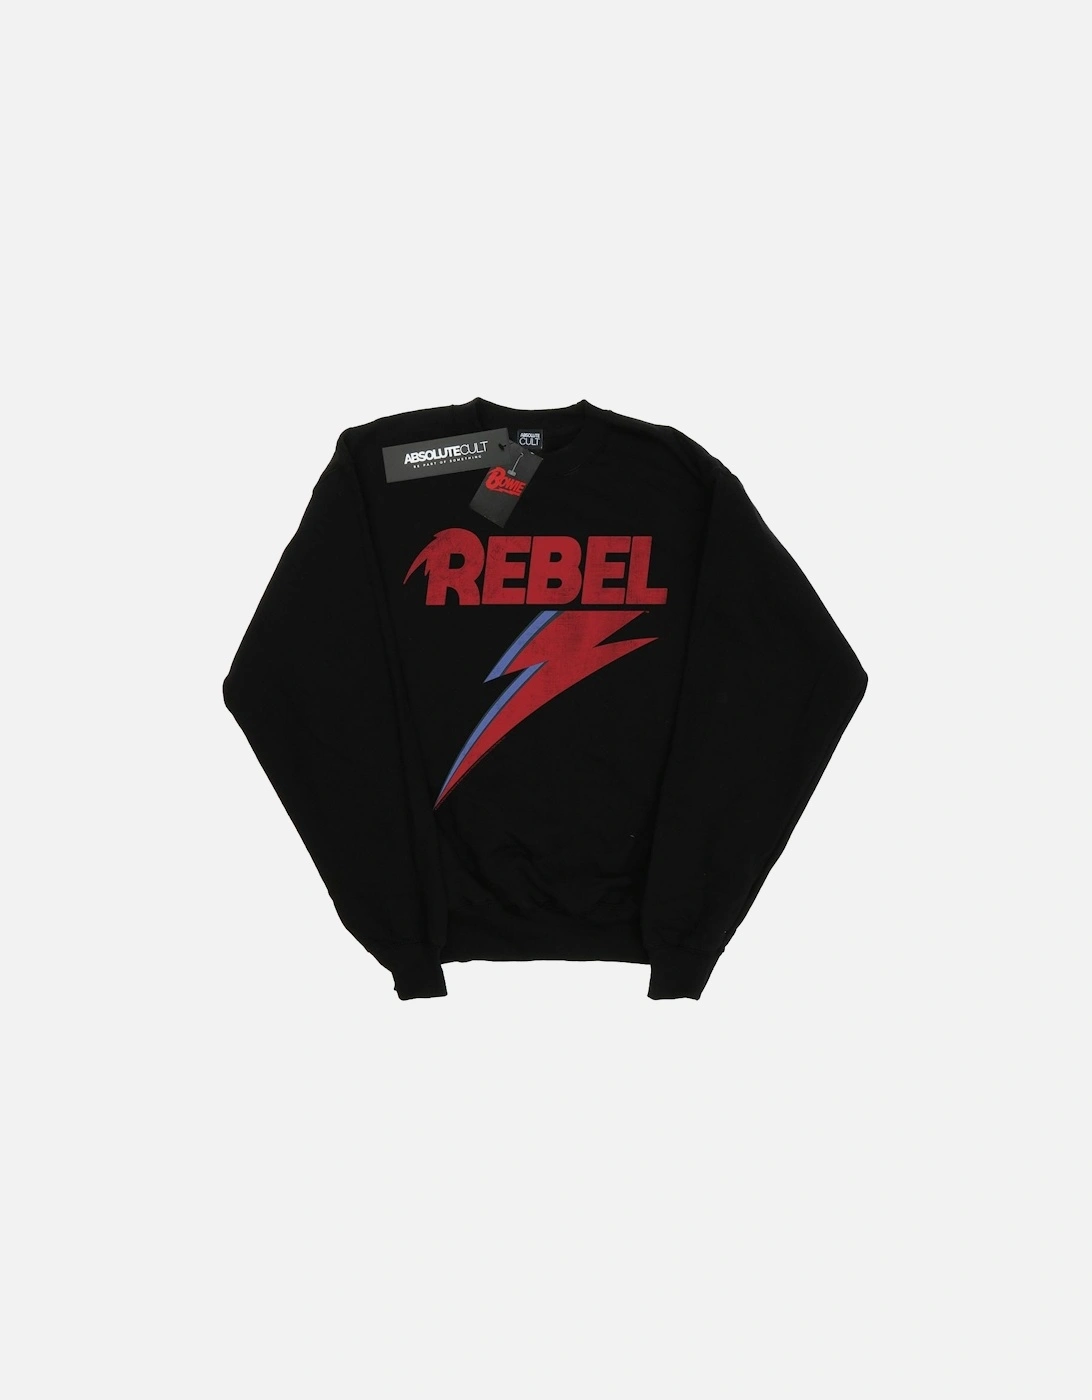 Boys Distressed Rebel Sweatshirt, 4 of 3